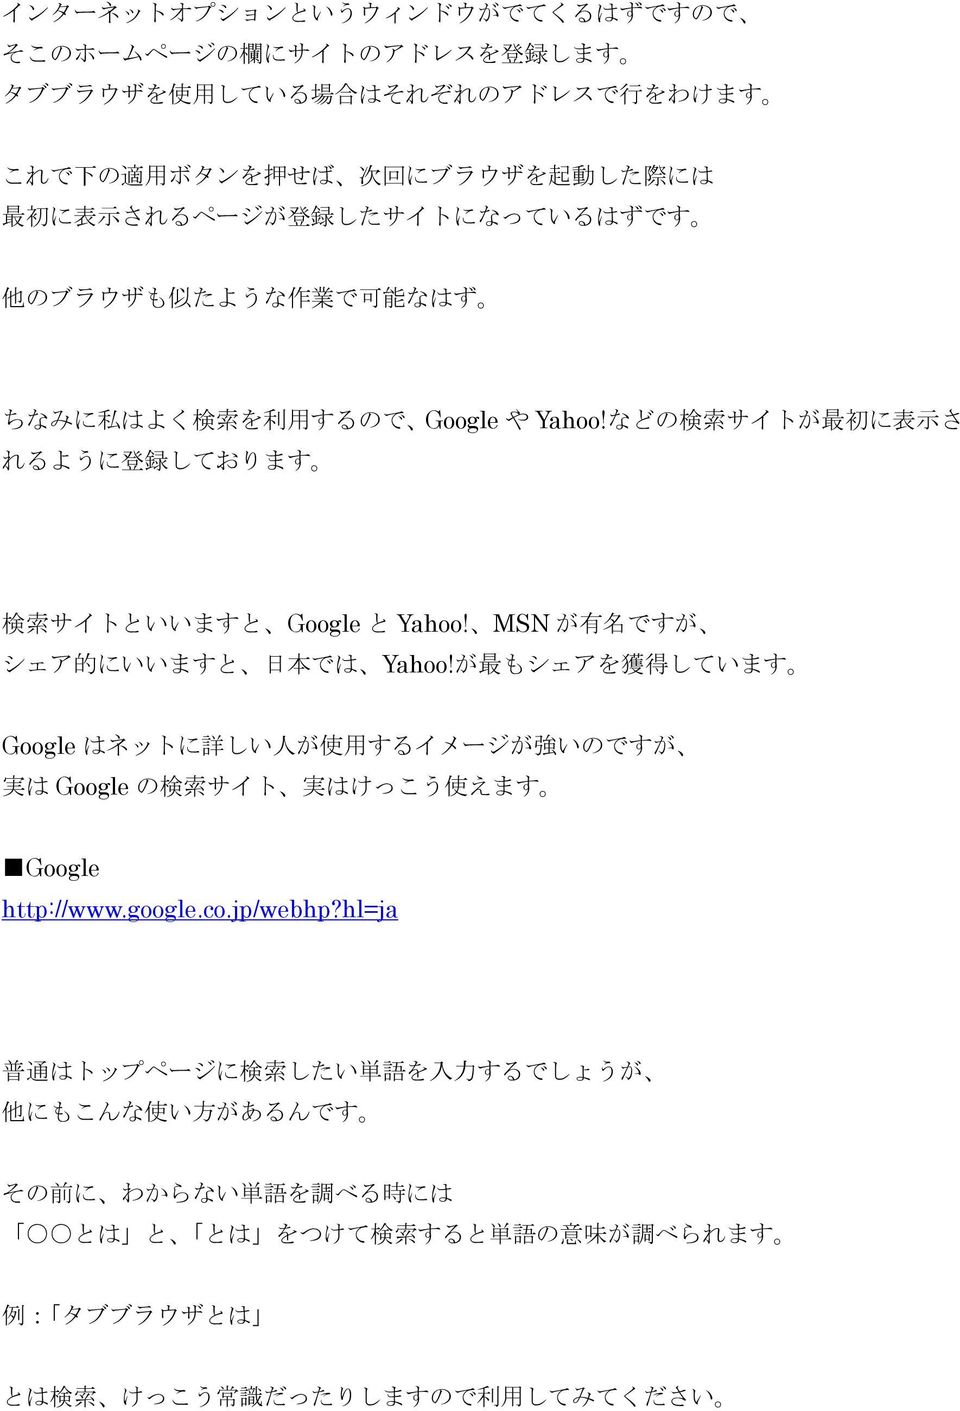 MSN が 有 名 ですが シェア 的 にいいますと 日 本 では Yahoo!が 最 もシェアを 獲 得 しています Google はネットに 詳 しい 人 が 使 用 するイメージが 強 いのですが 実 は Google の 検 索 サイト 実 はけっこう 使 えます Google http://www.google.co.